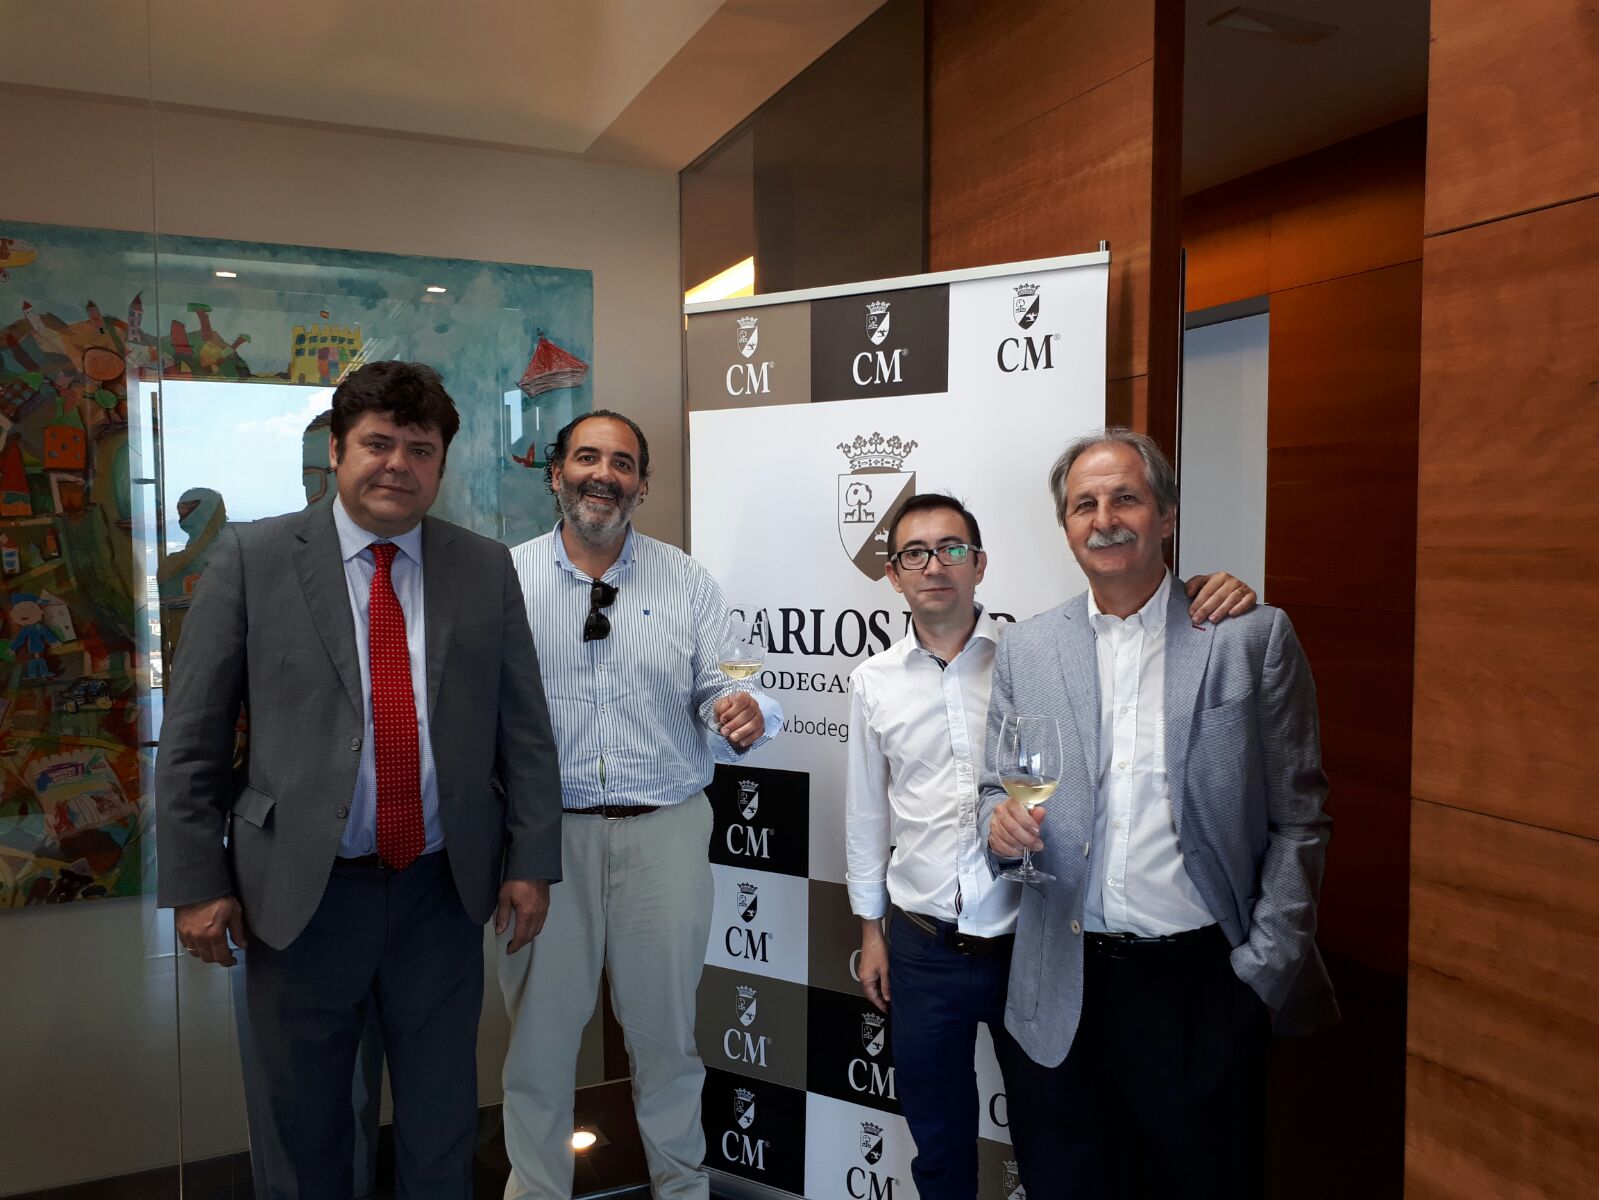 El nuevo proyecto de Carlos Moro en la Rioja